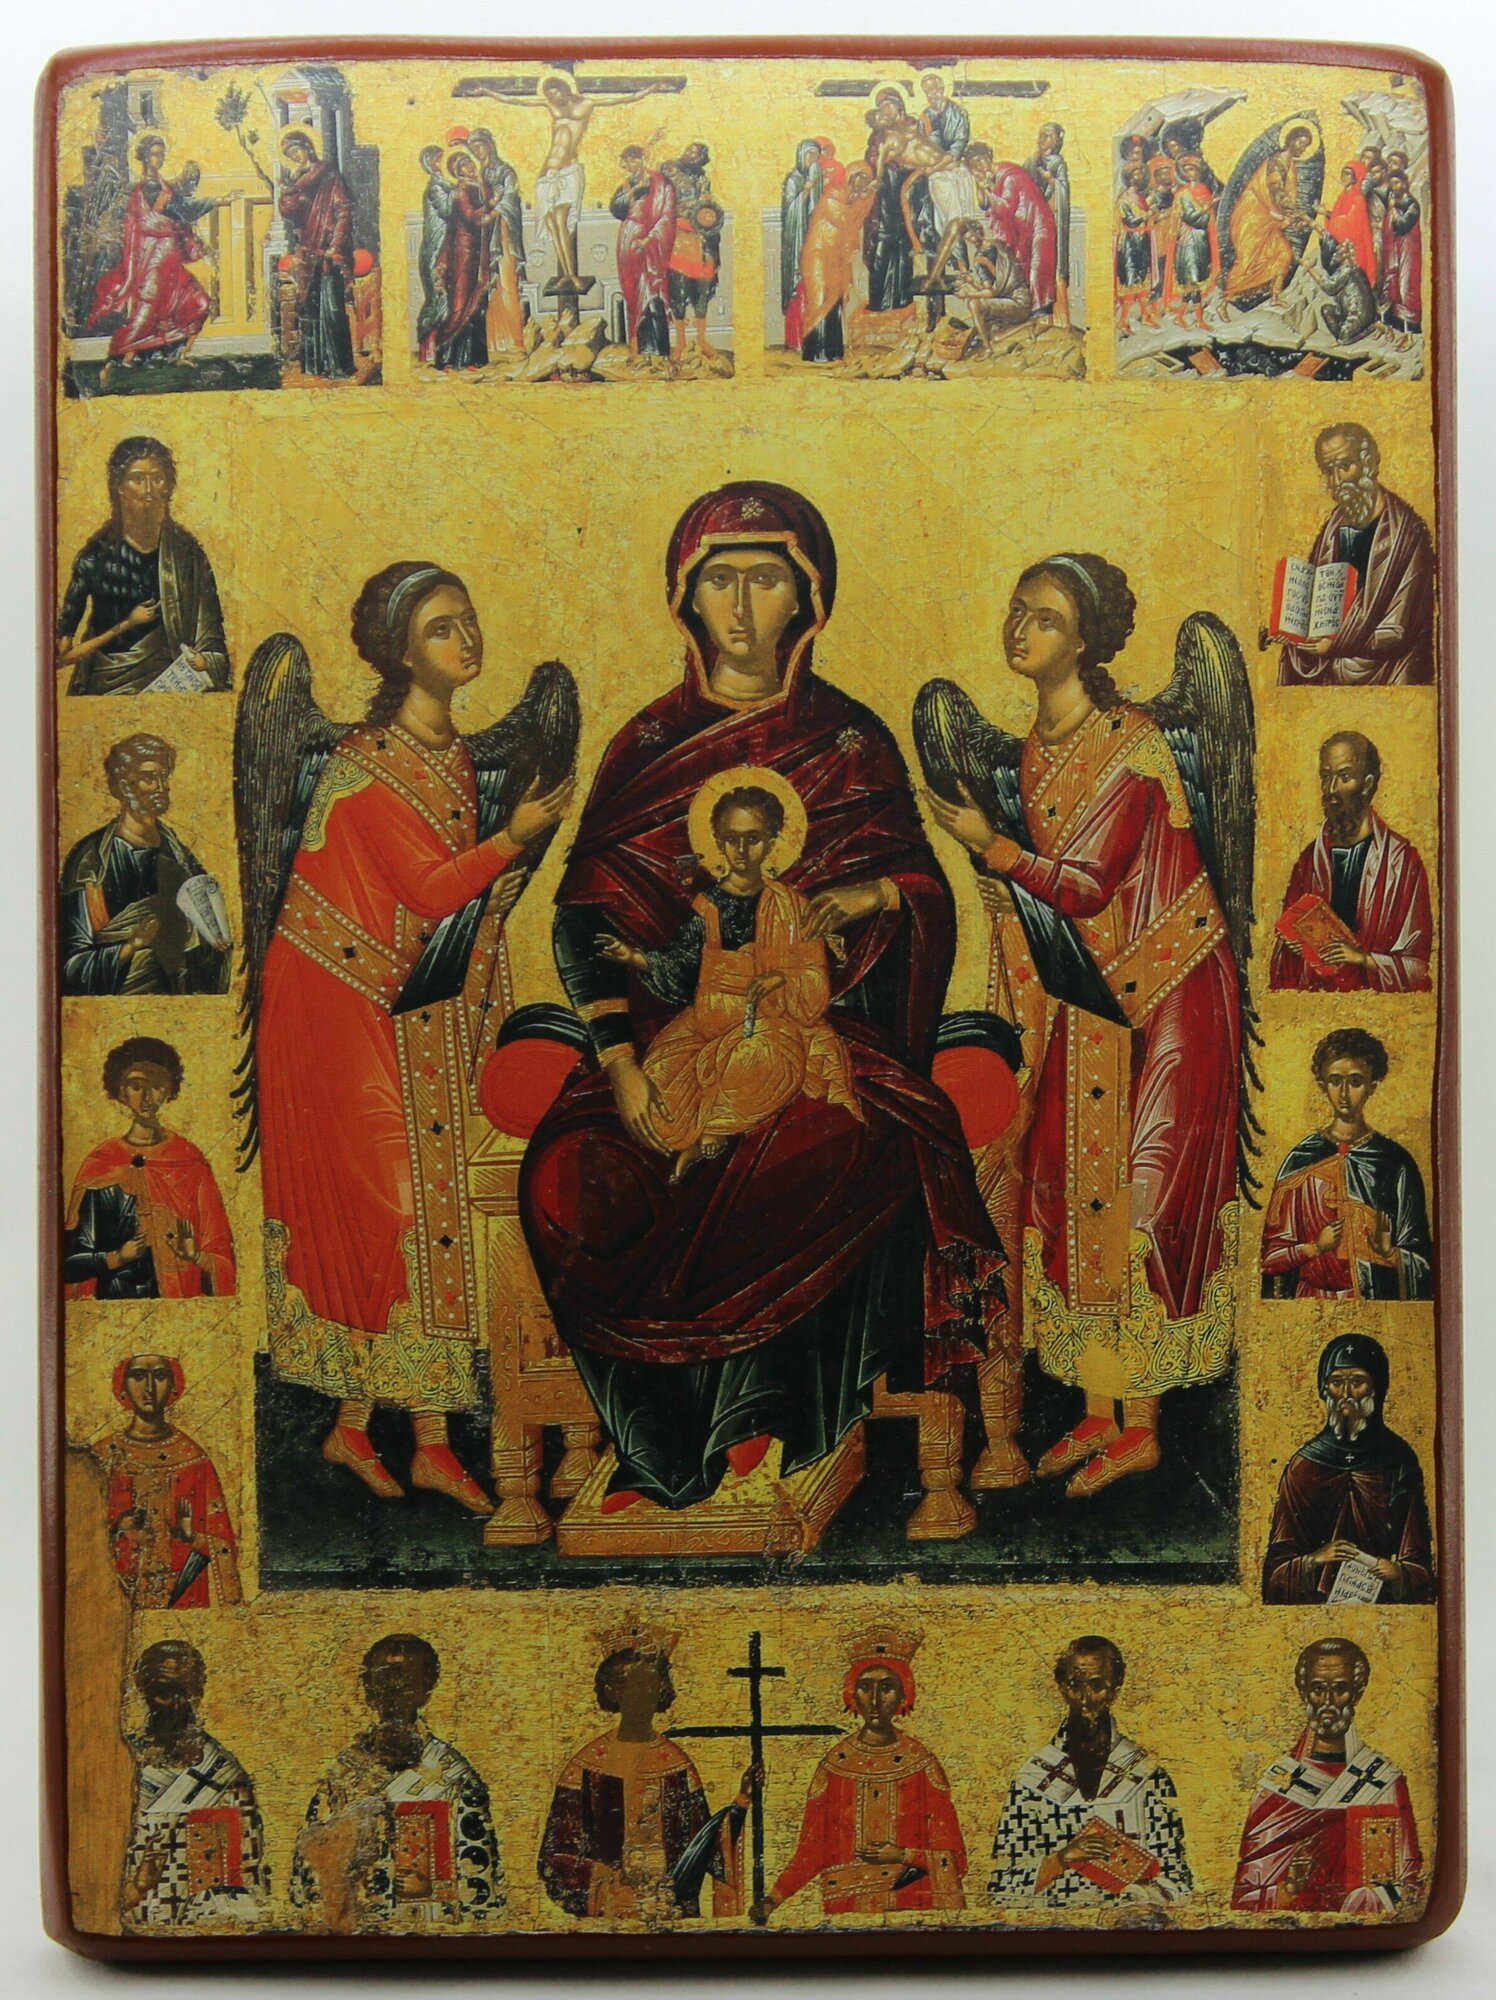 Православная Икона Божией Матери на престоле, деревянная иконная доска, левкас, ручная работа (Art.1222С)